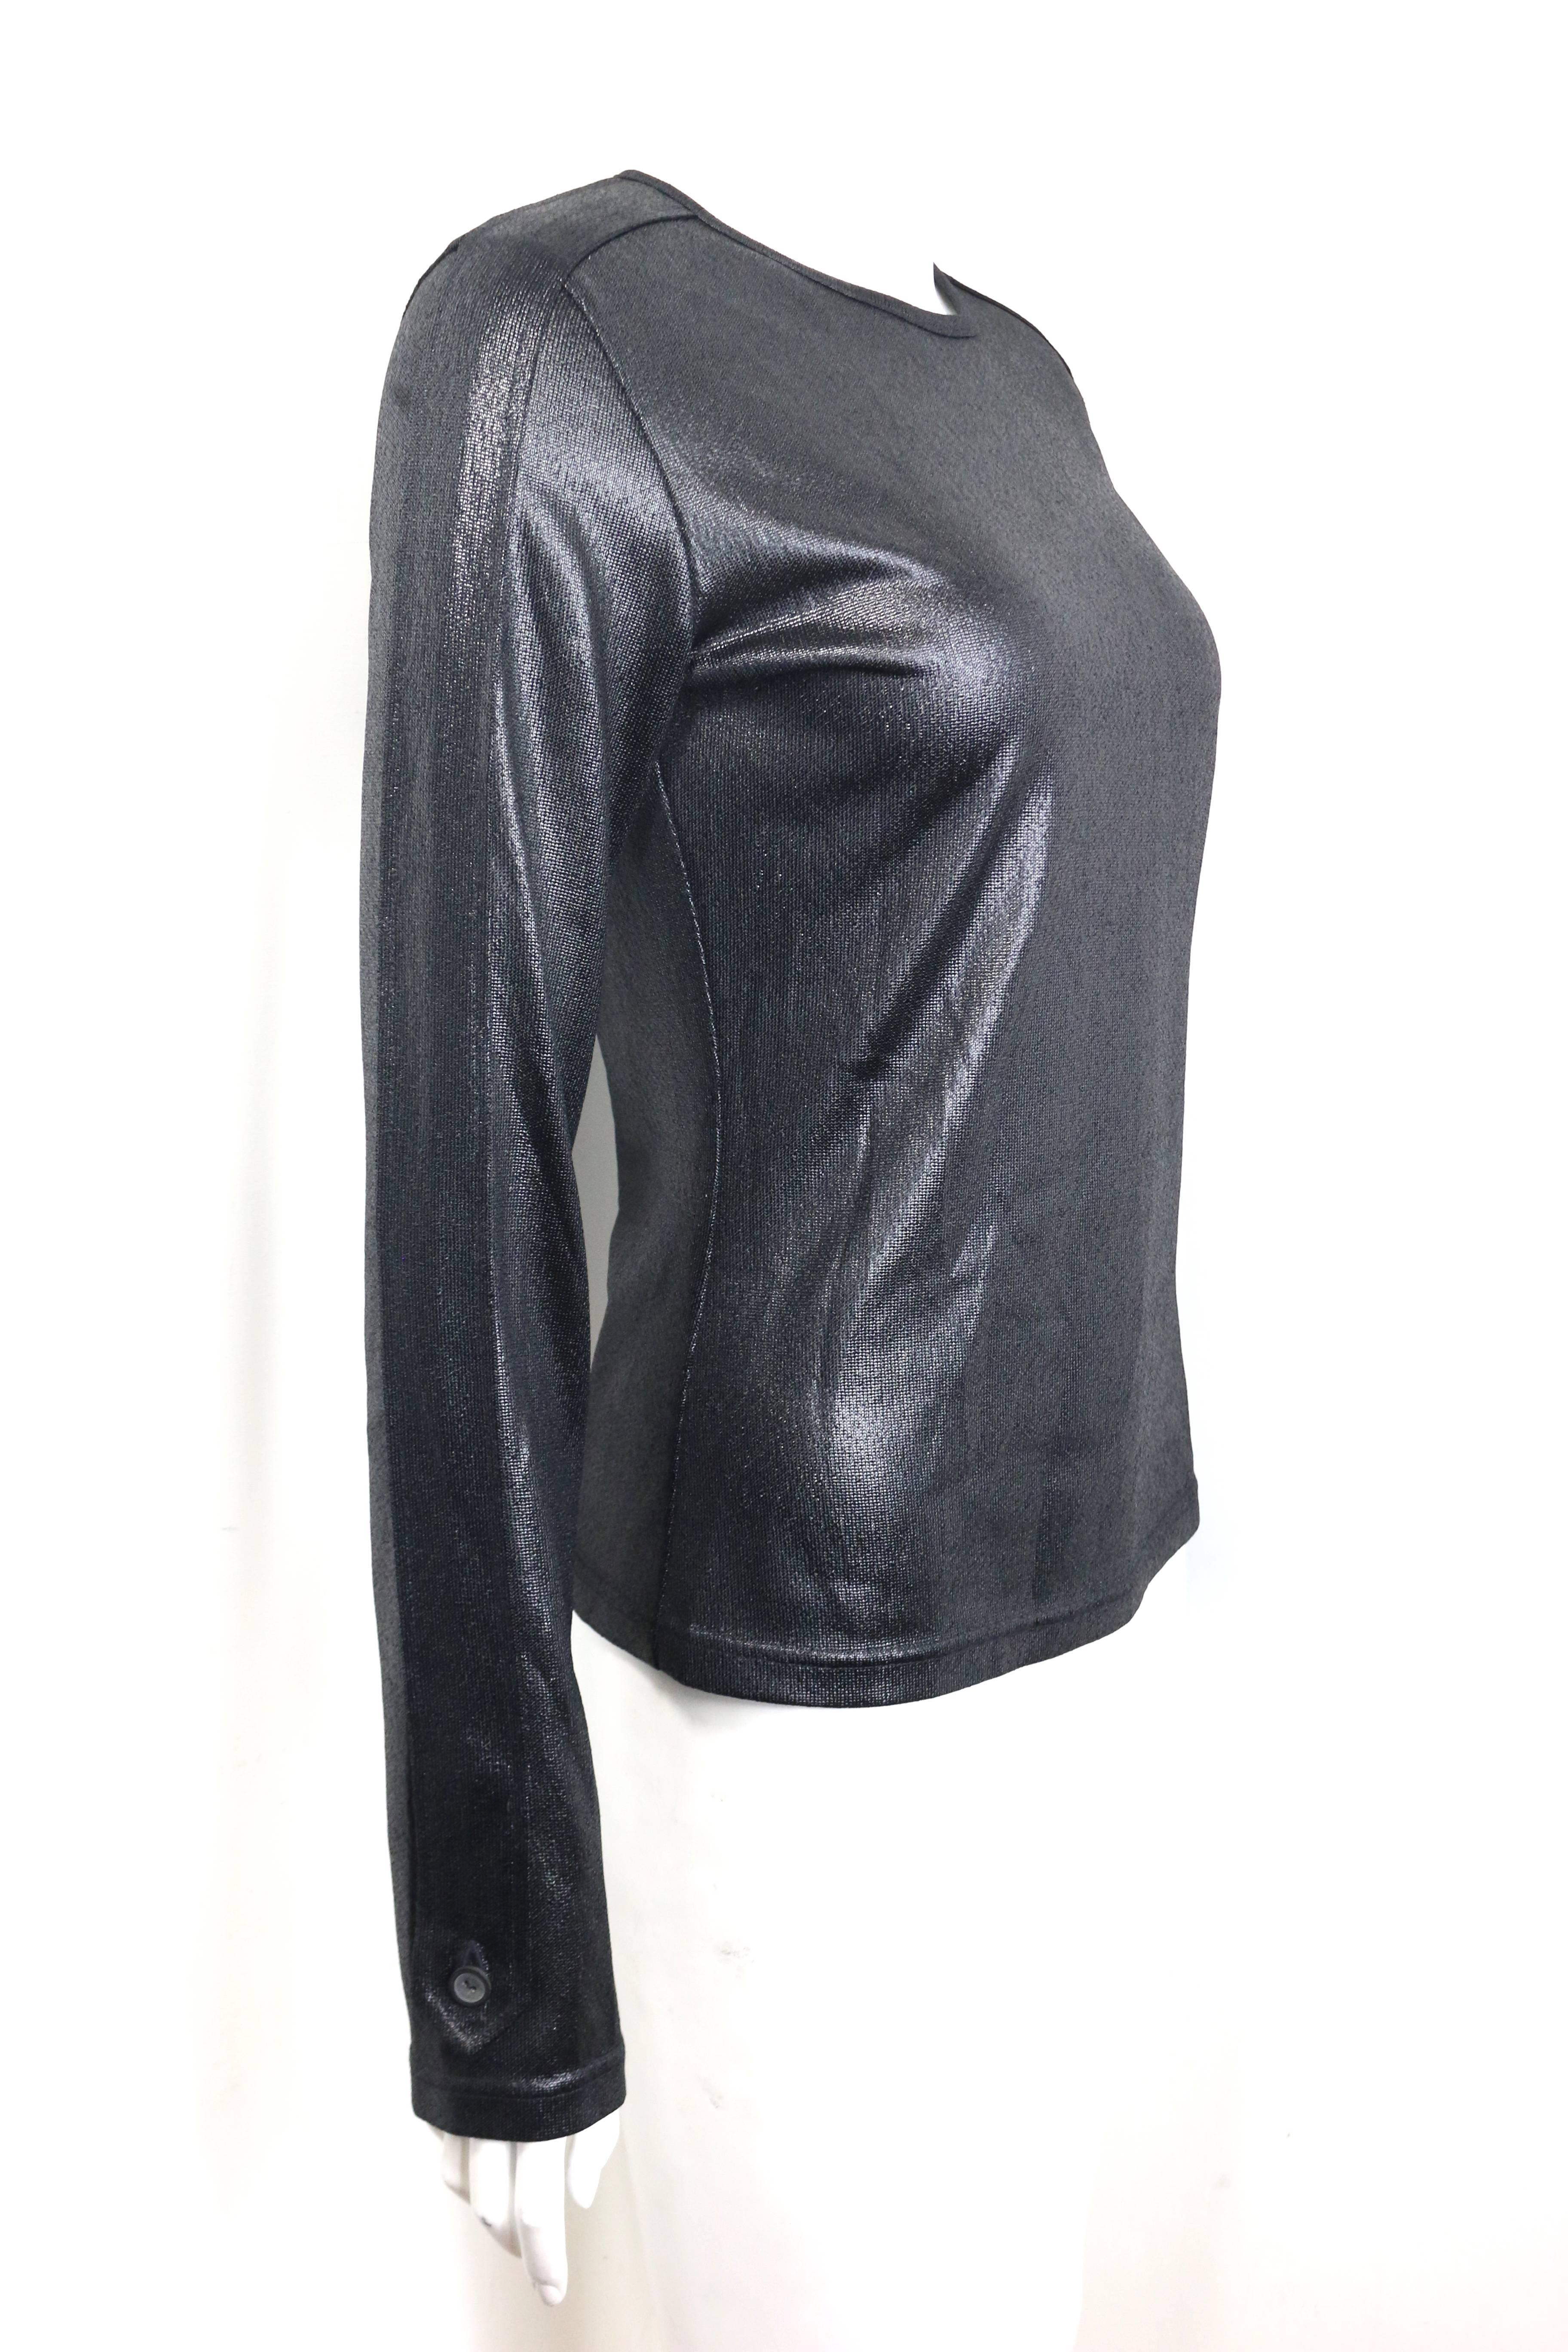 - Pull-over à manches longues en polyester noir de Gucci by Tom Ford, collection automne 1996. 

- Boutons sur le côté des manches. 

- Taille 44. 

- 100% polyester. 

